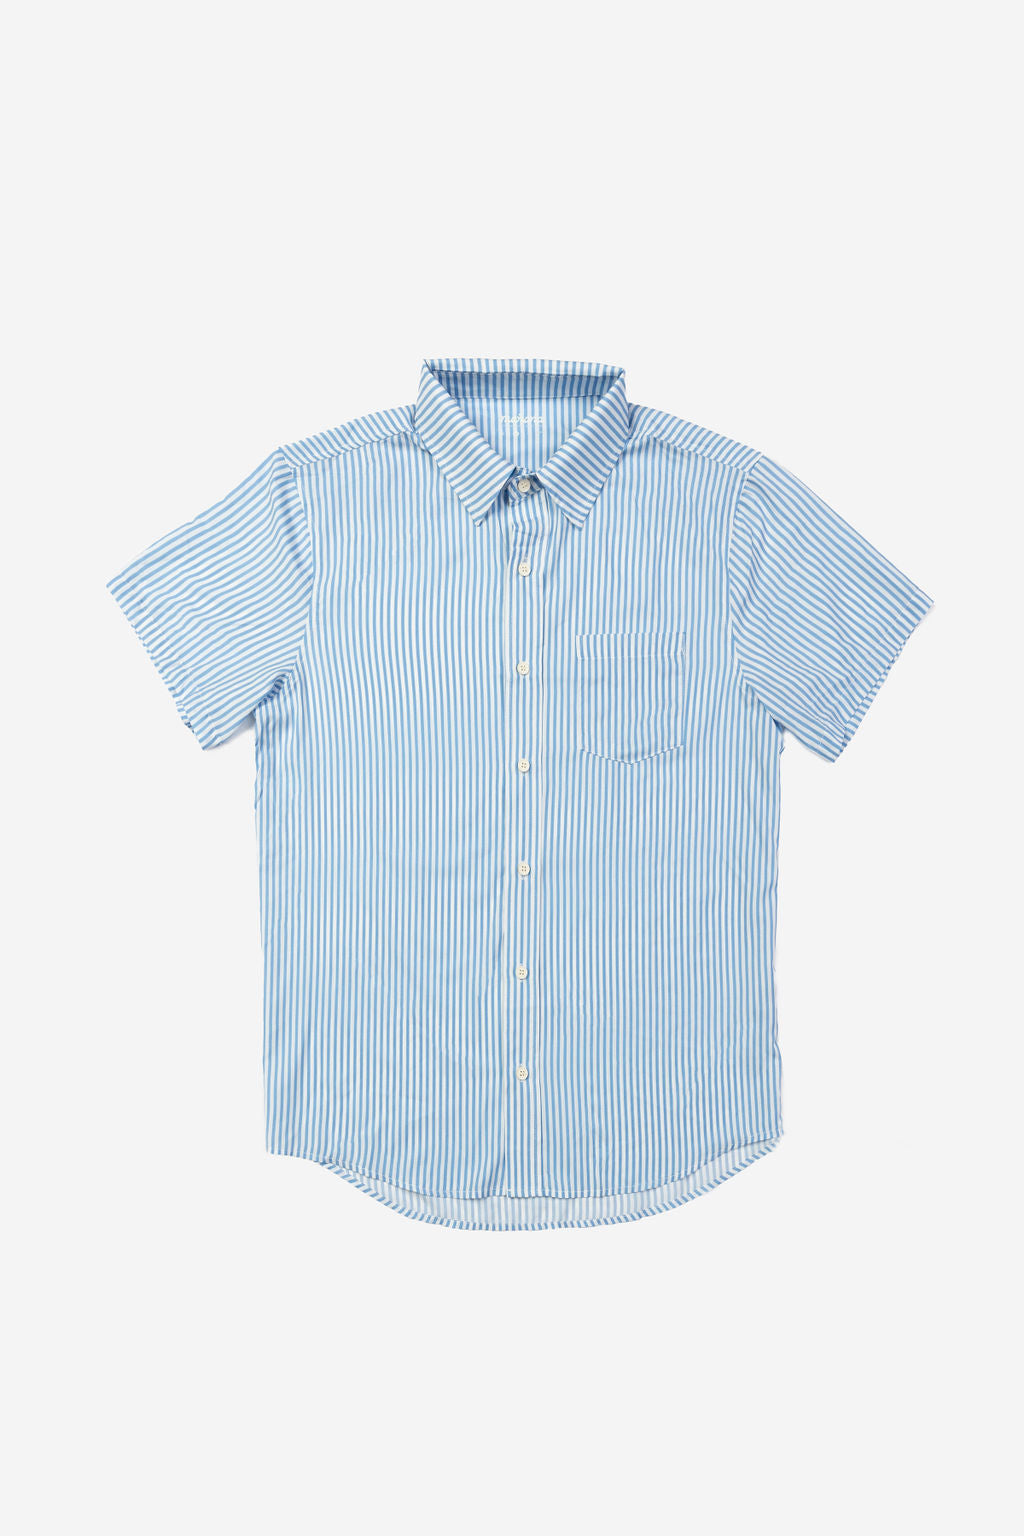 Formal light weight Blue Striped Breeze Button Up shirt